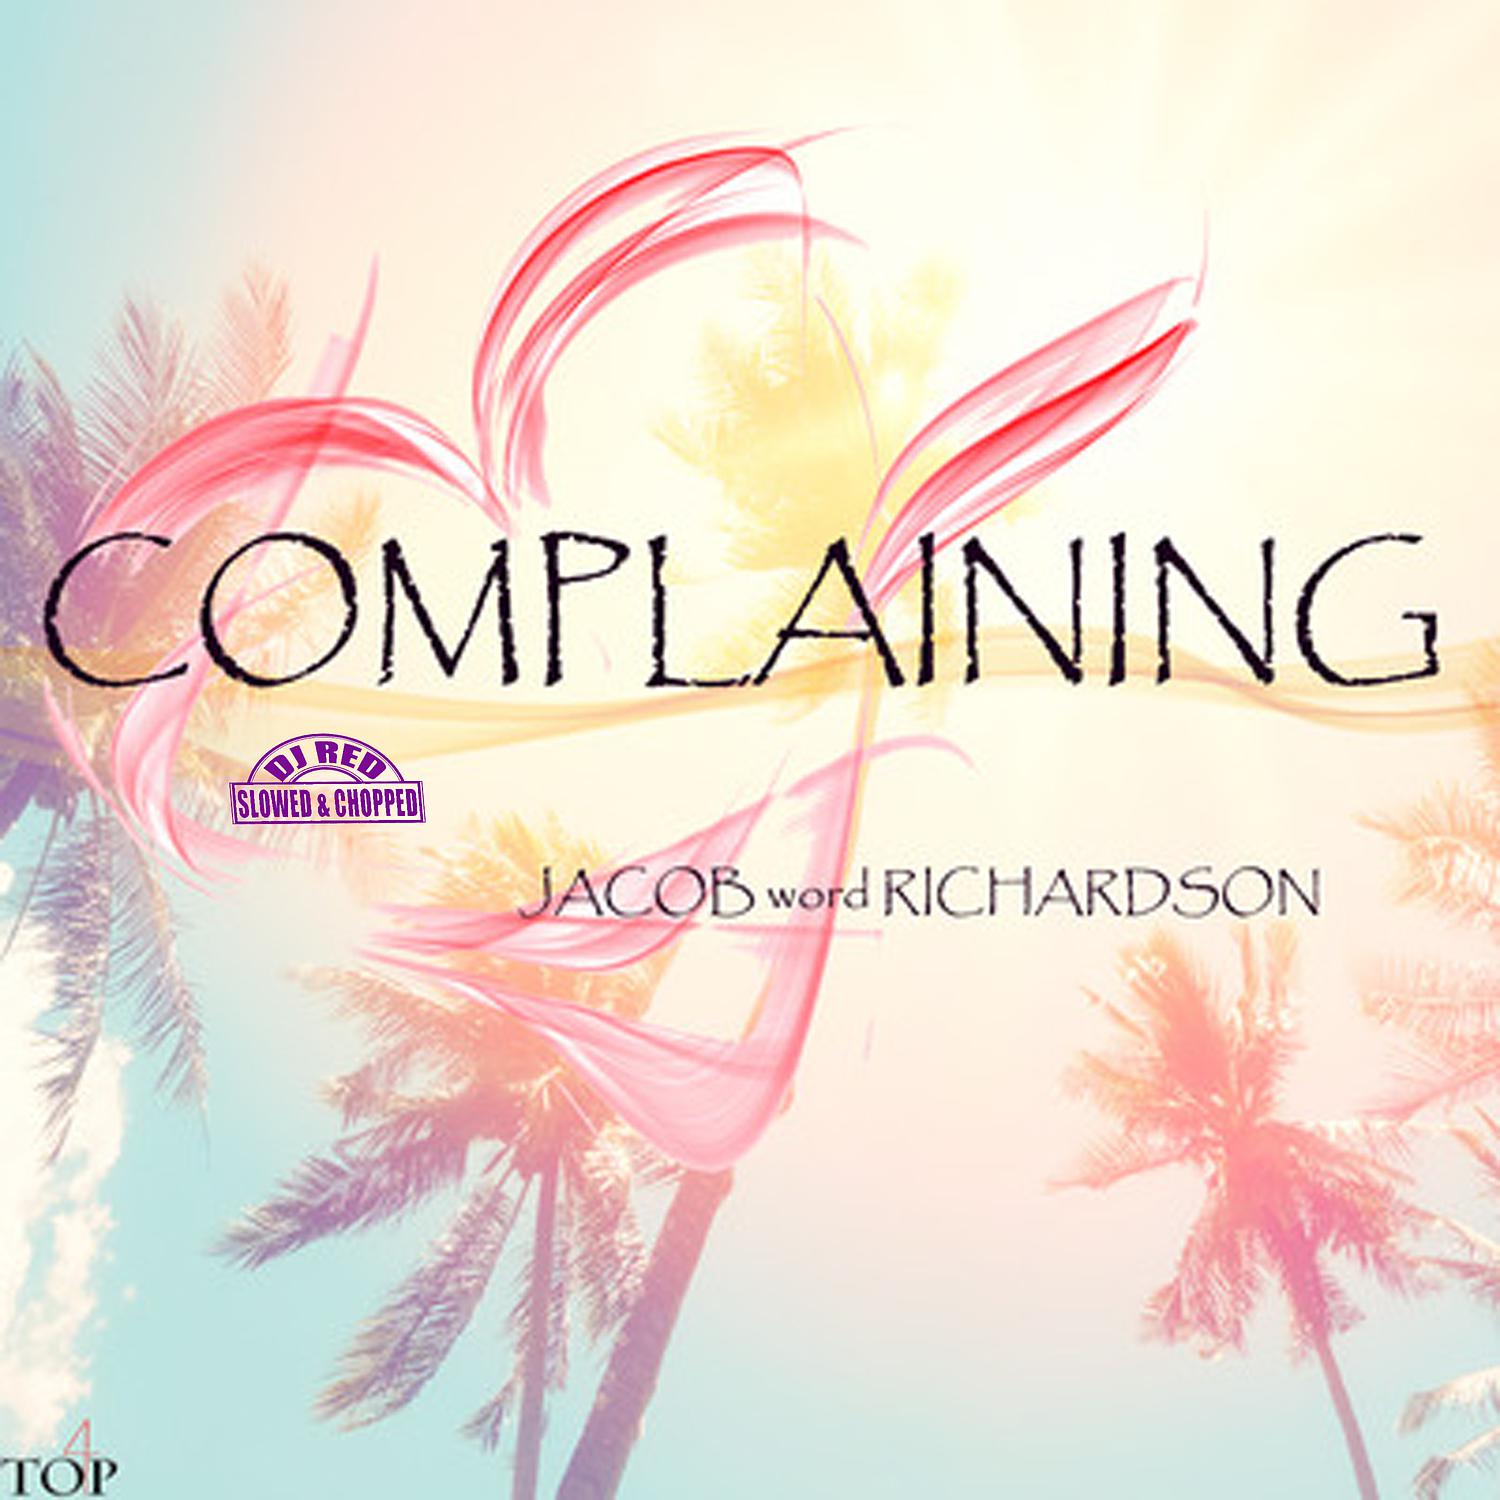 Jacob word Richardson - Complaining (DJ Red Slowed & Chopped)